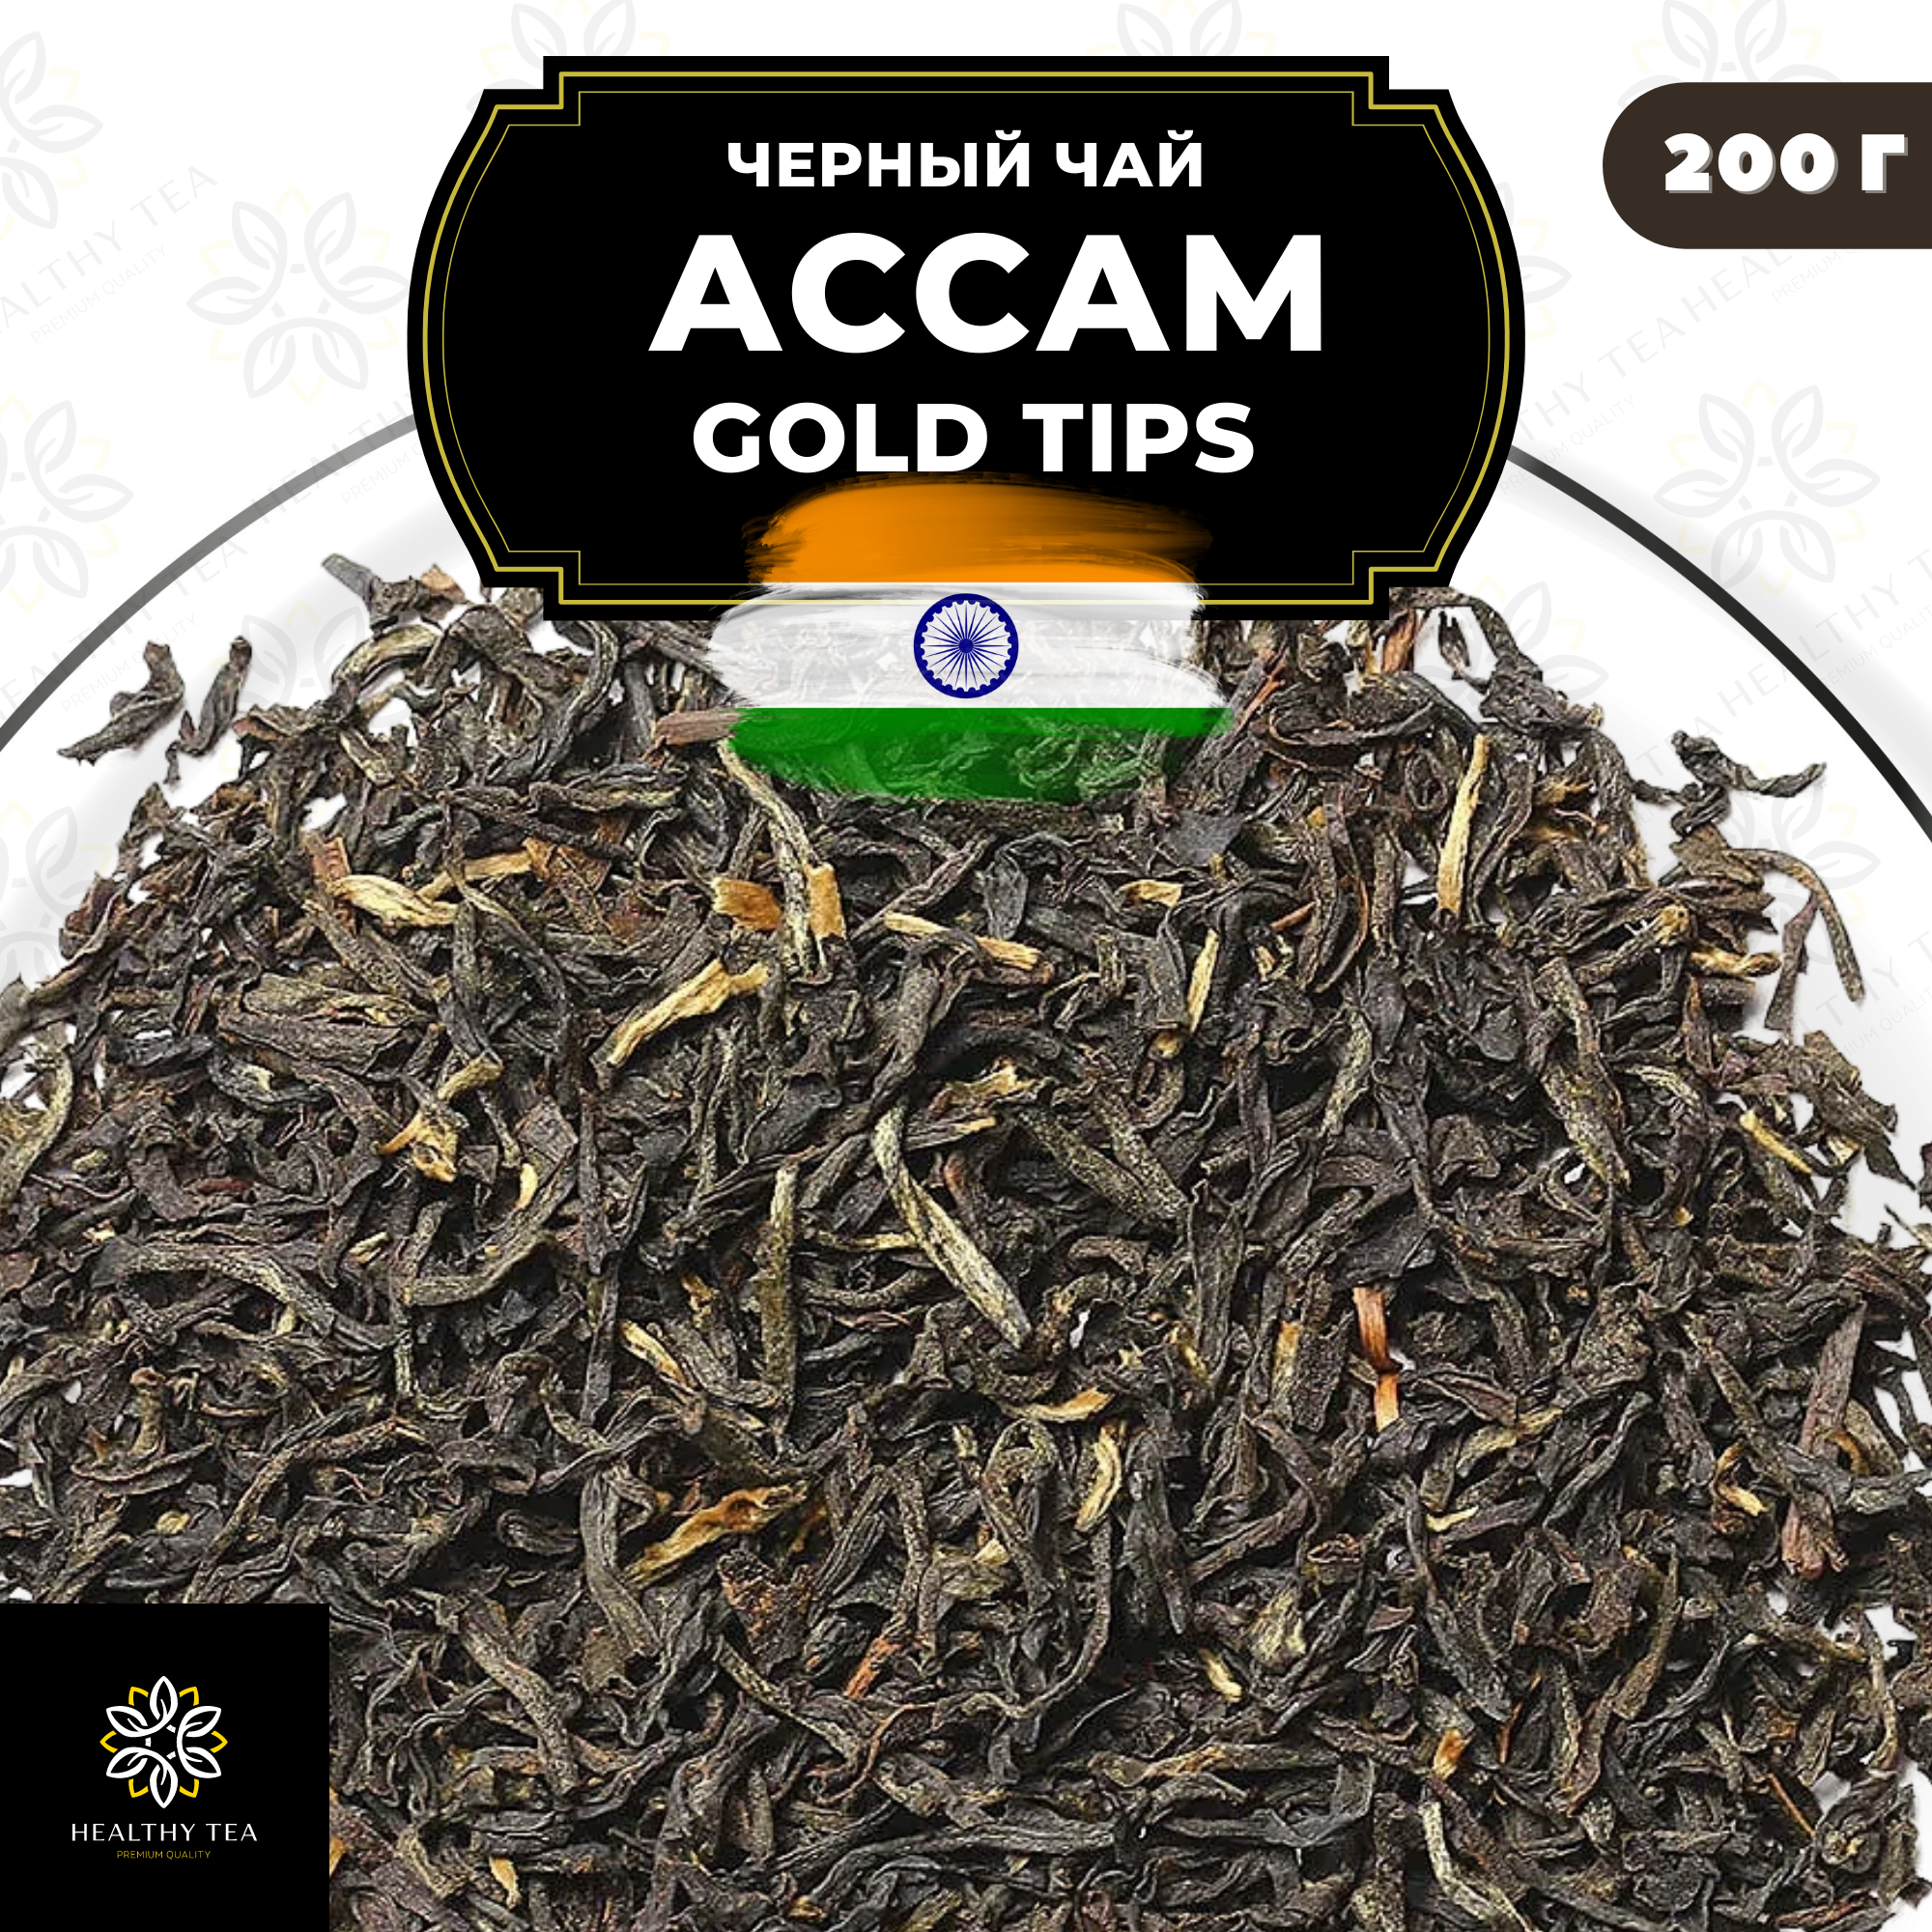 Индийский Черный листовой чай Ассам Gold Tips Полезный чай / HEALTHY TEA, 200 гр